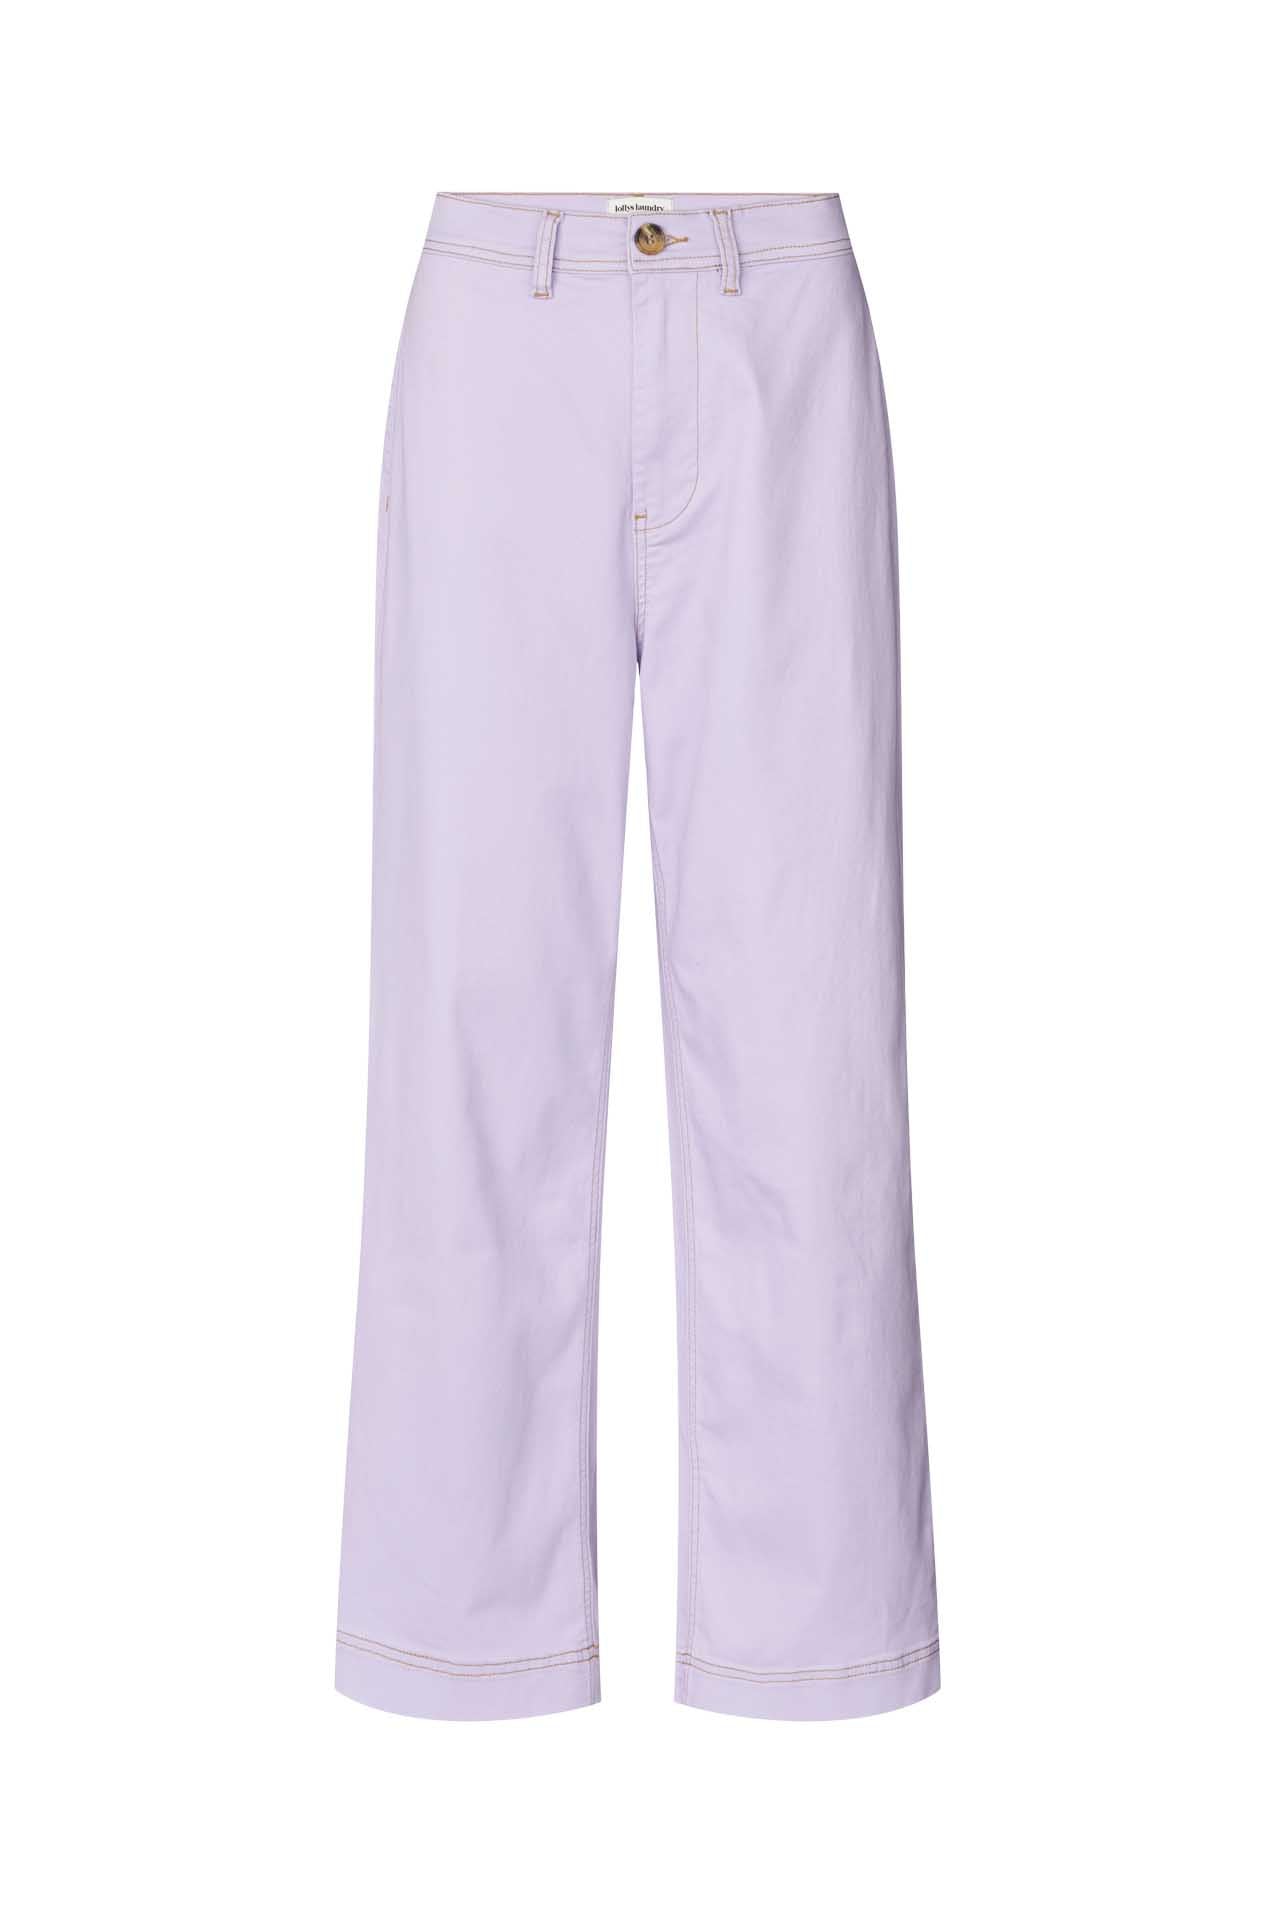 Lollys Laundry Florida Pants - Lavender